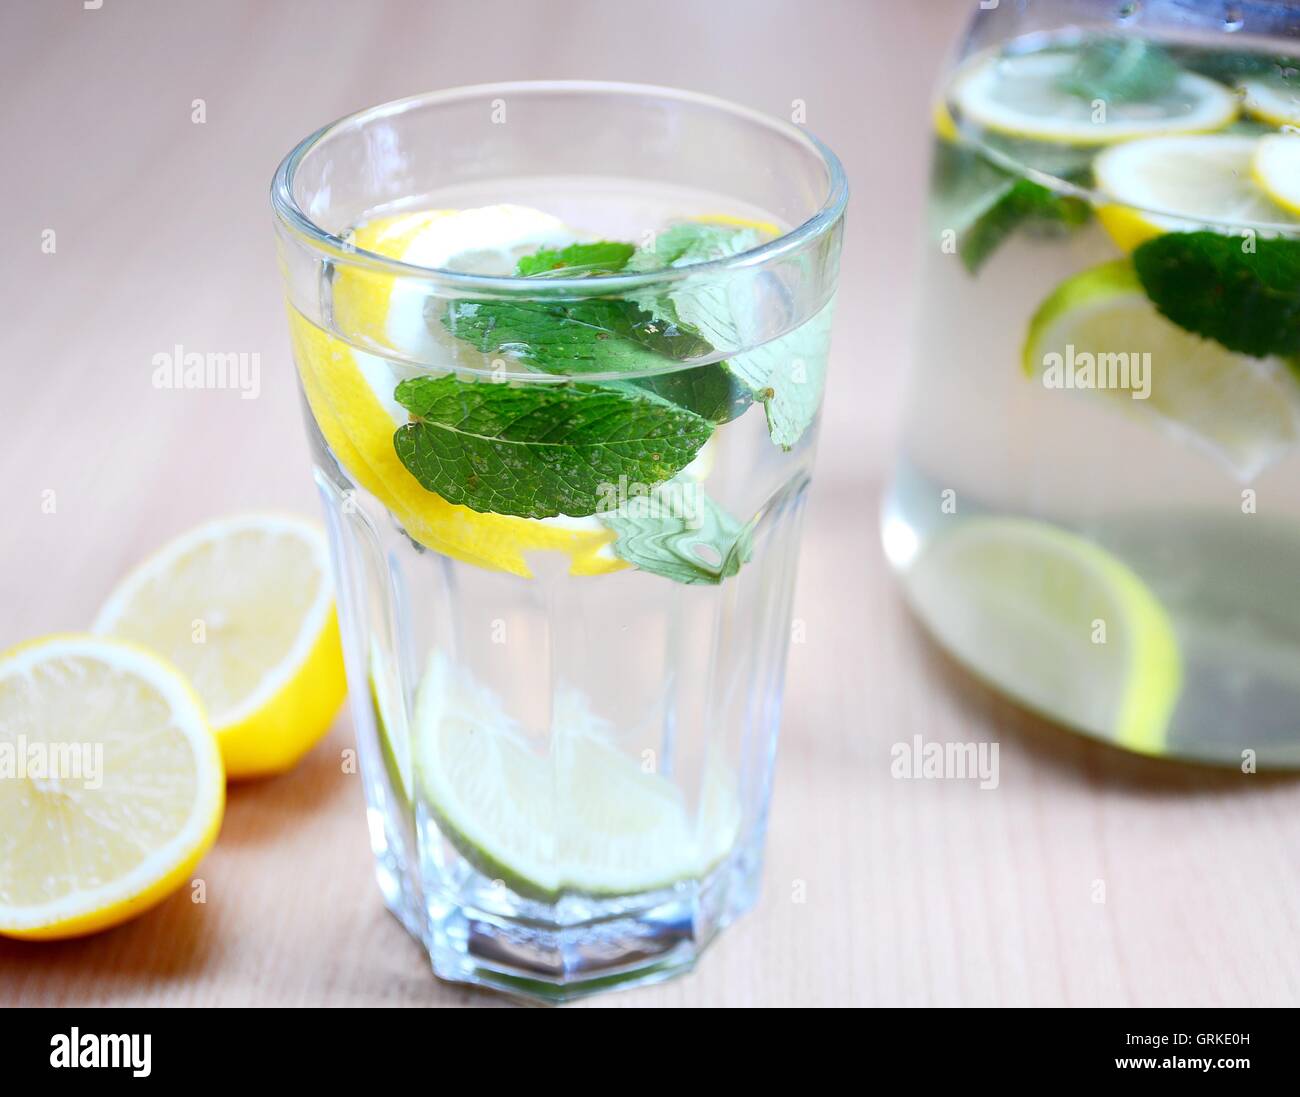 Fresh boisson non alcoolisée avec de l'eau, les feuilles de menthe, pièces de citrons et limes en verre. Banque D'Images